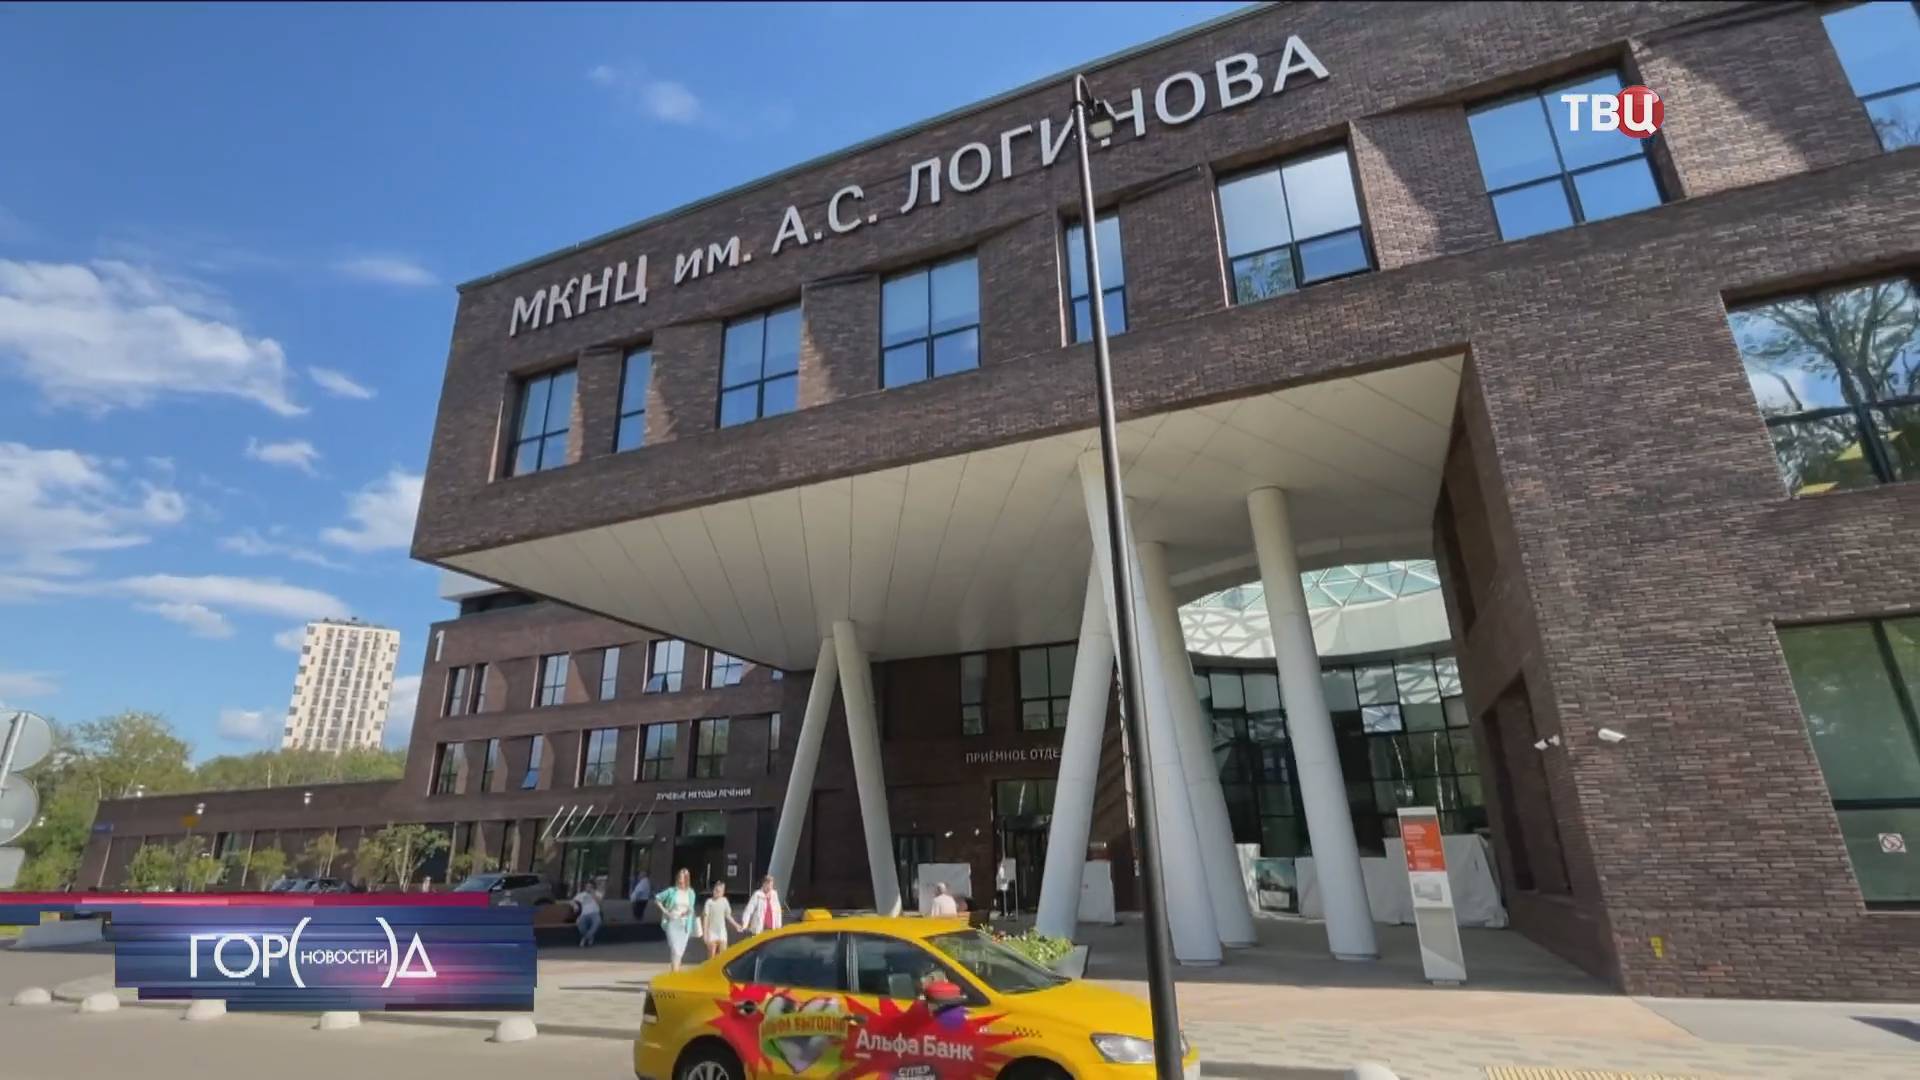 Пациентам с ревматологическими заболеваниями оказывают помощь в Москве / Город новостей на ТВЦ